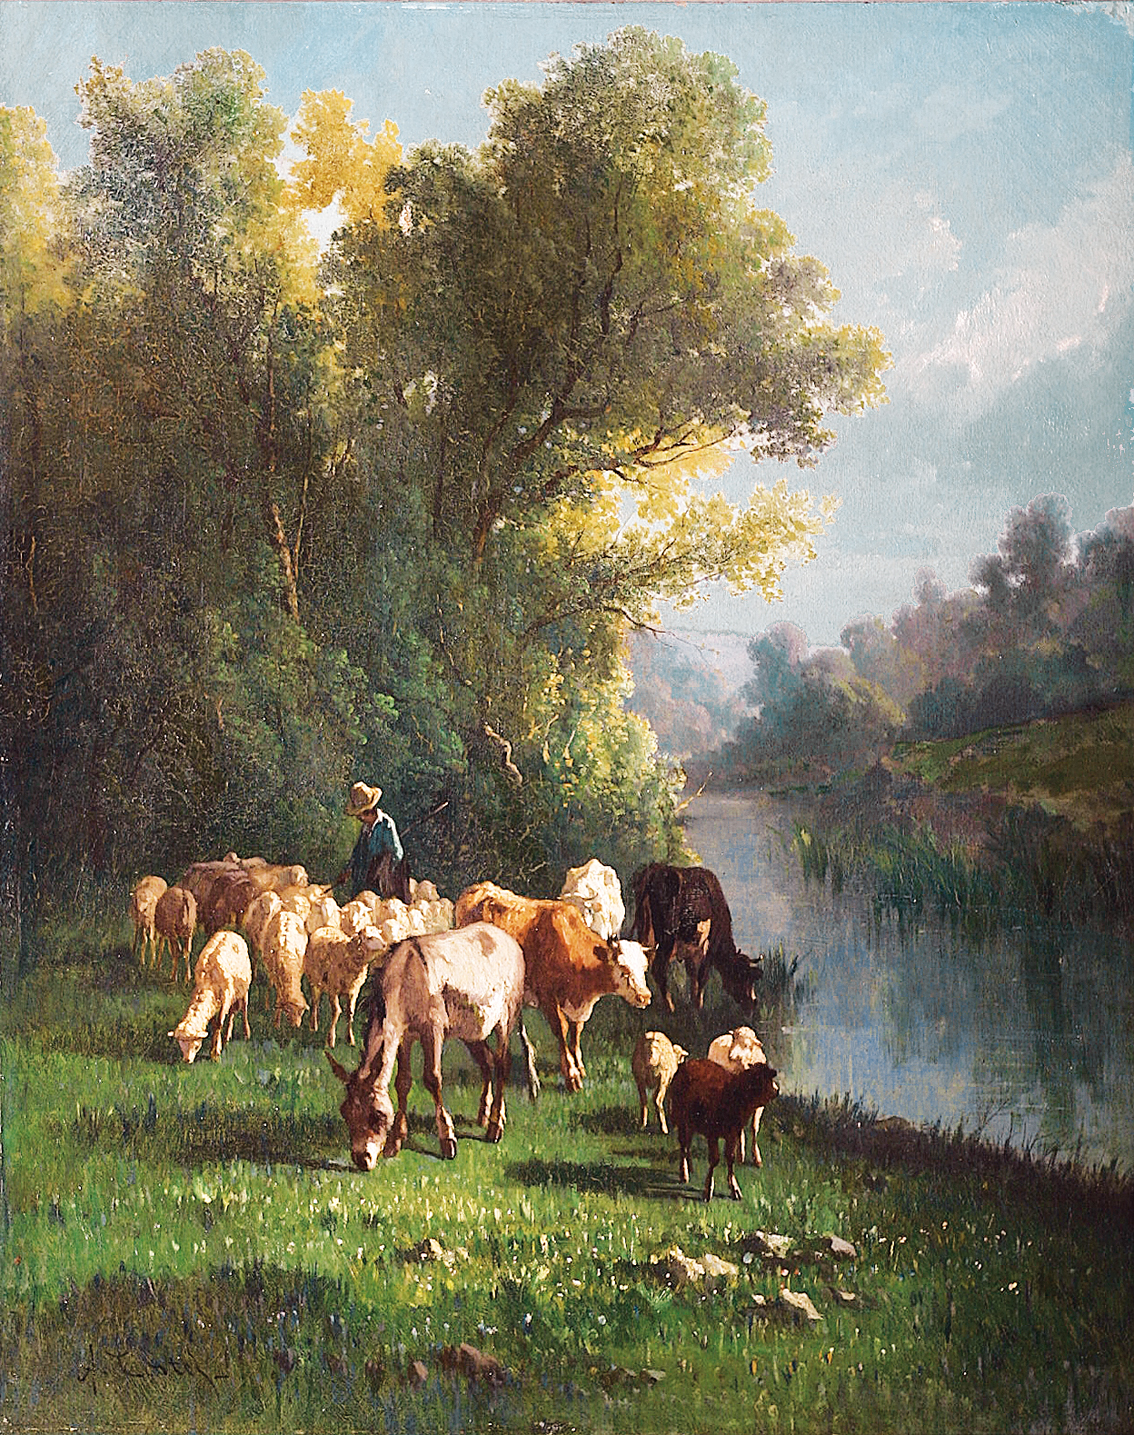 Hirte mit seiner Herde am Fluß